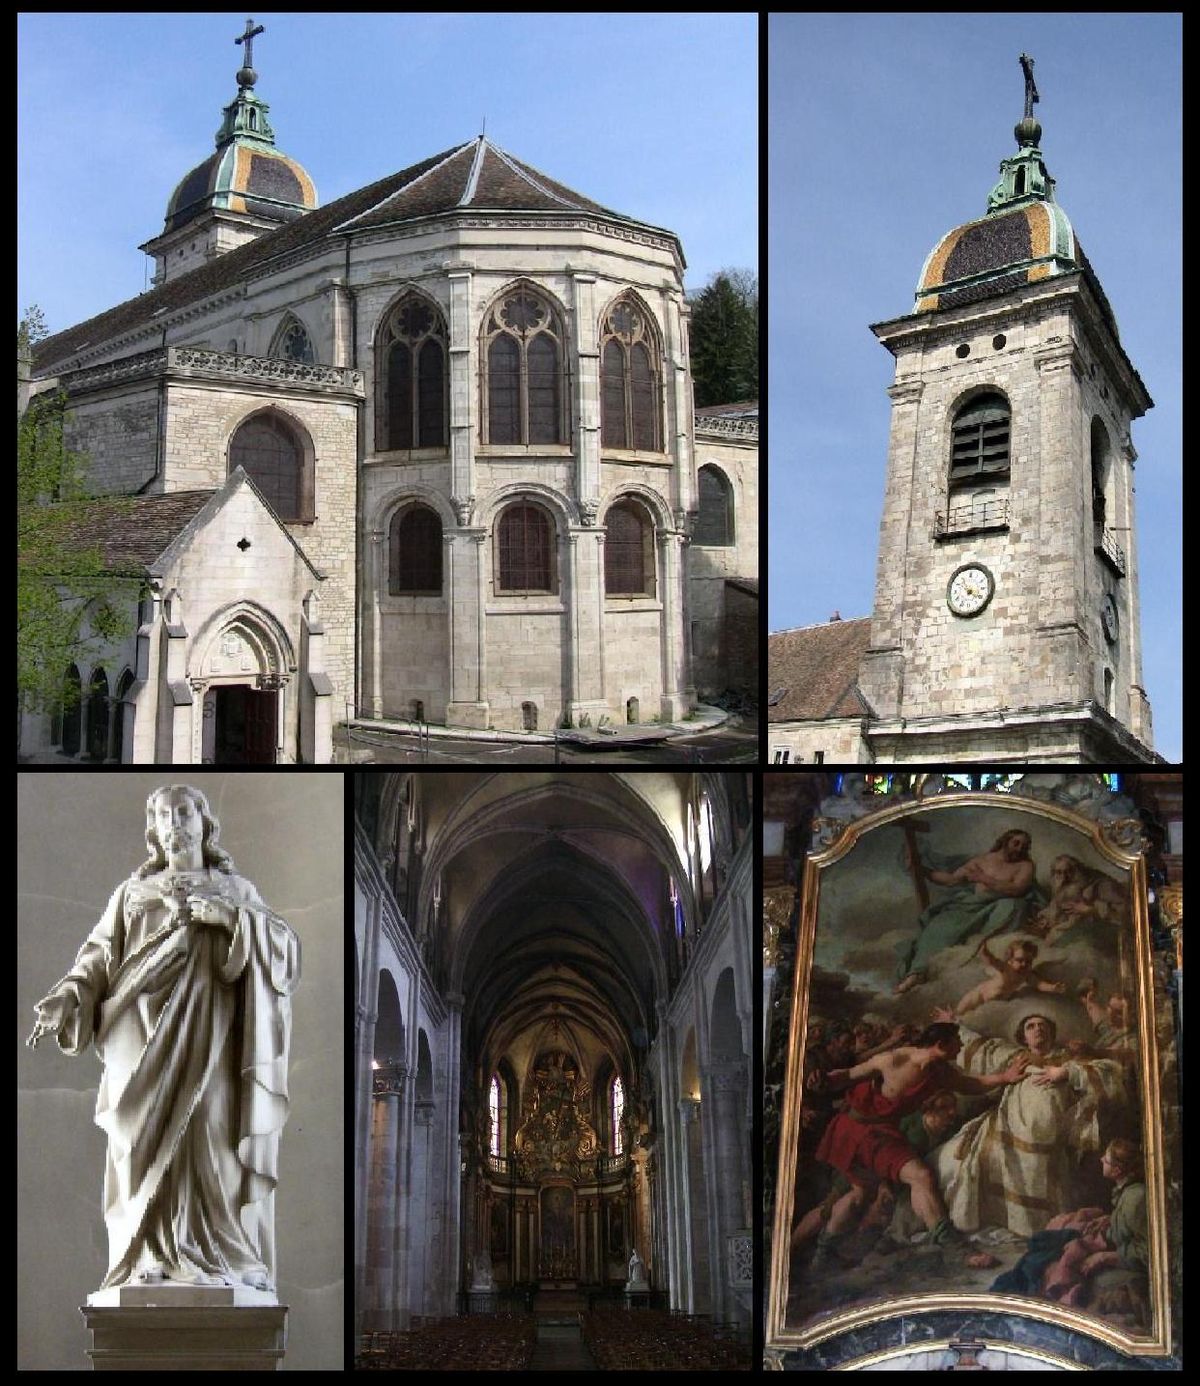 De gauche à droite et de haut en bas : le chœur liturgique, le clocher, une statue du Christ, le contre-chœur et Le Martyre de Saint-Étienne.